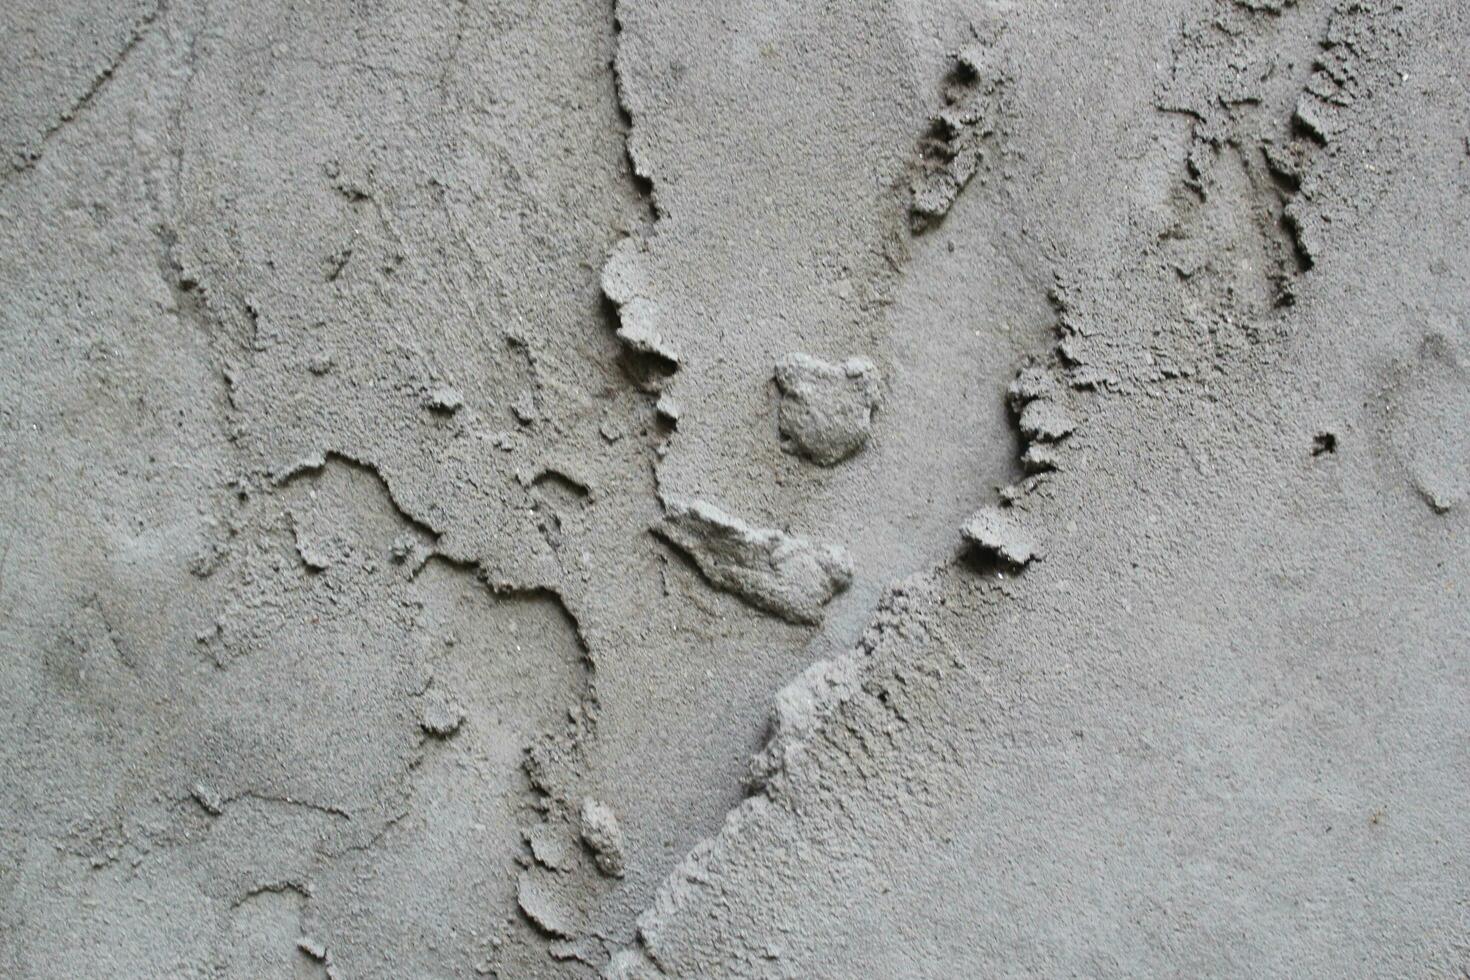 desigual cimento e areia parede textura fundo, sujo cimento parede superfície, rústico areia parede foto